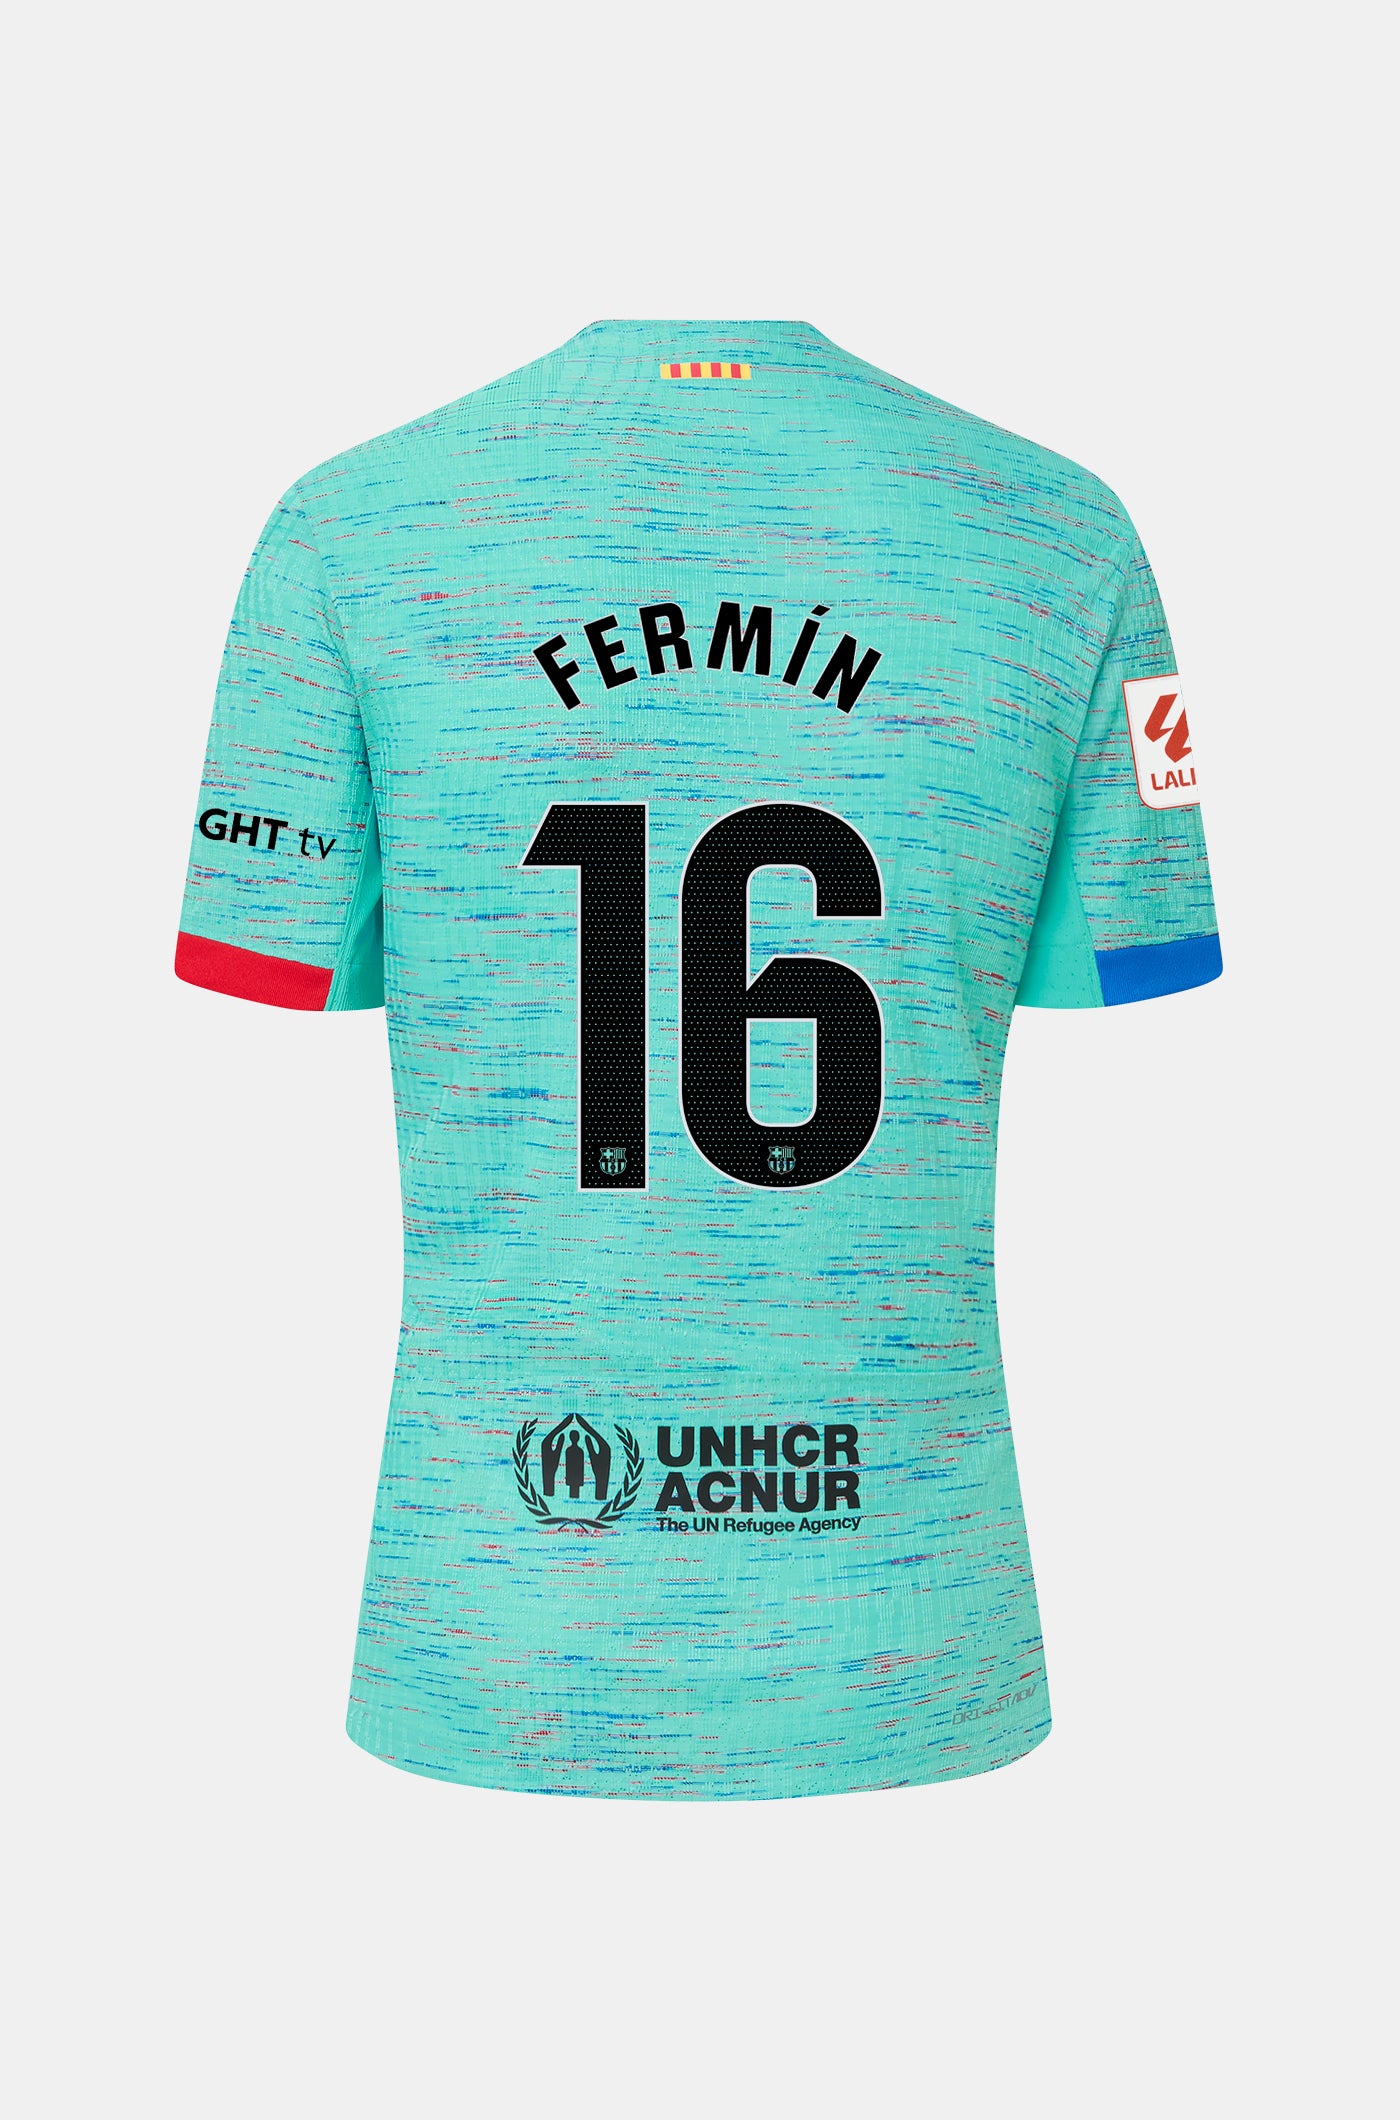 LFP FC Barcelona third shirt 23/24 Player’s Edition  - FERMÍN